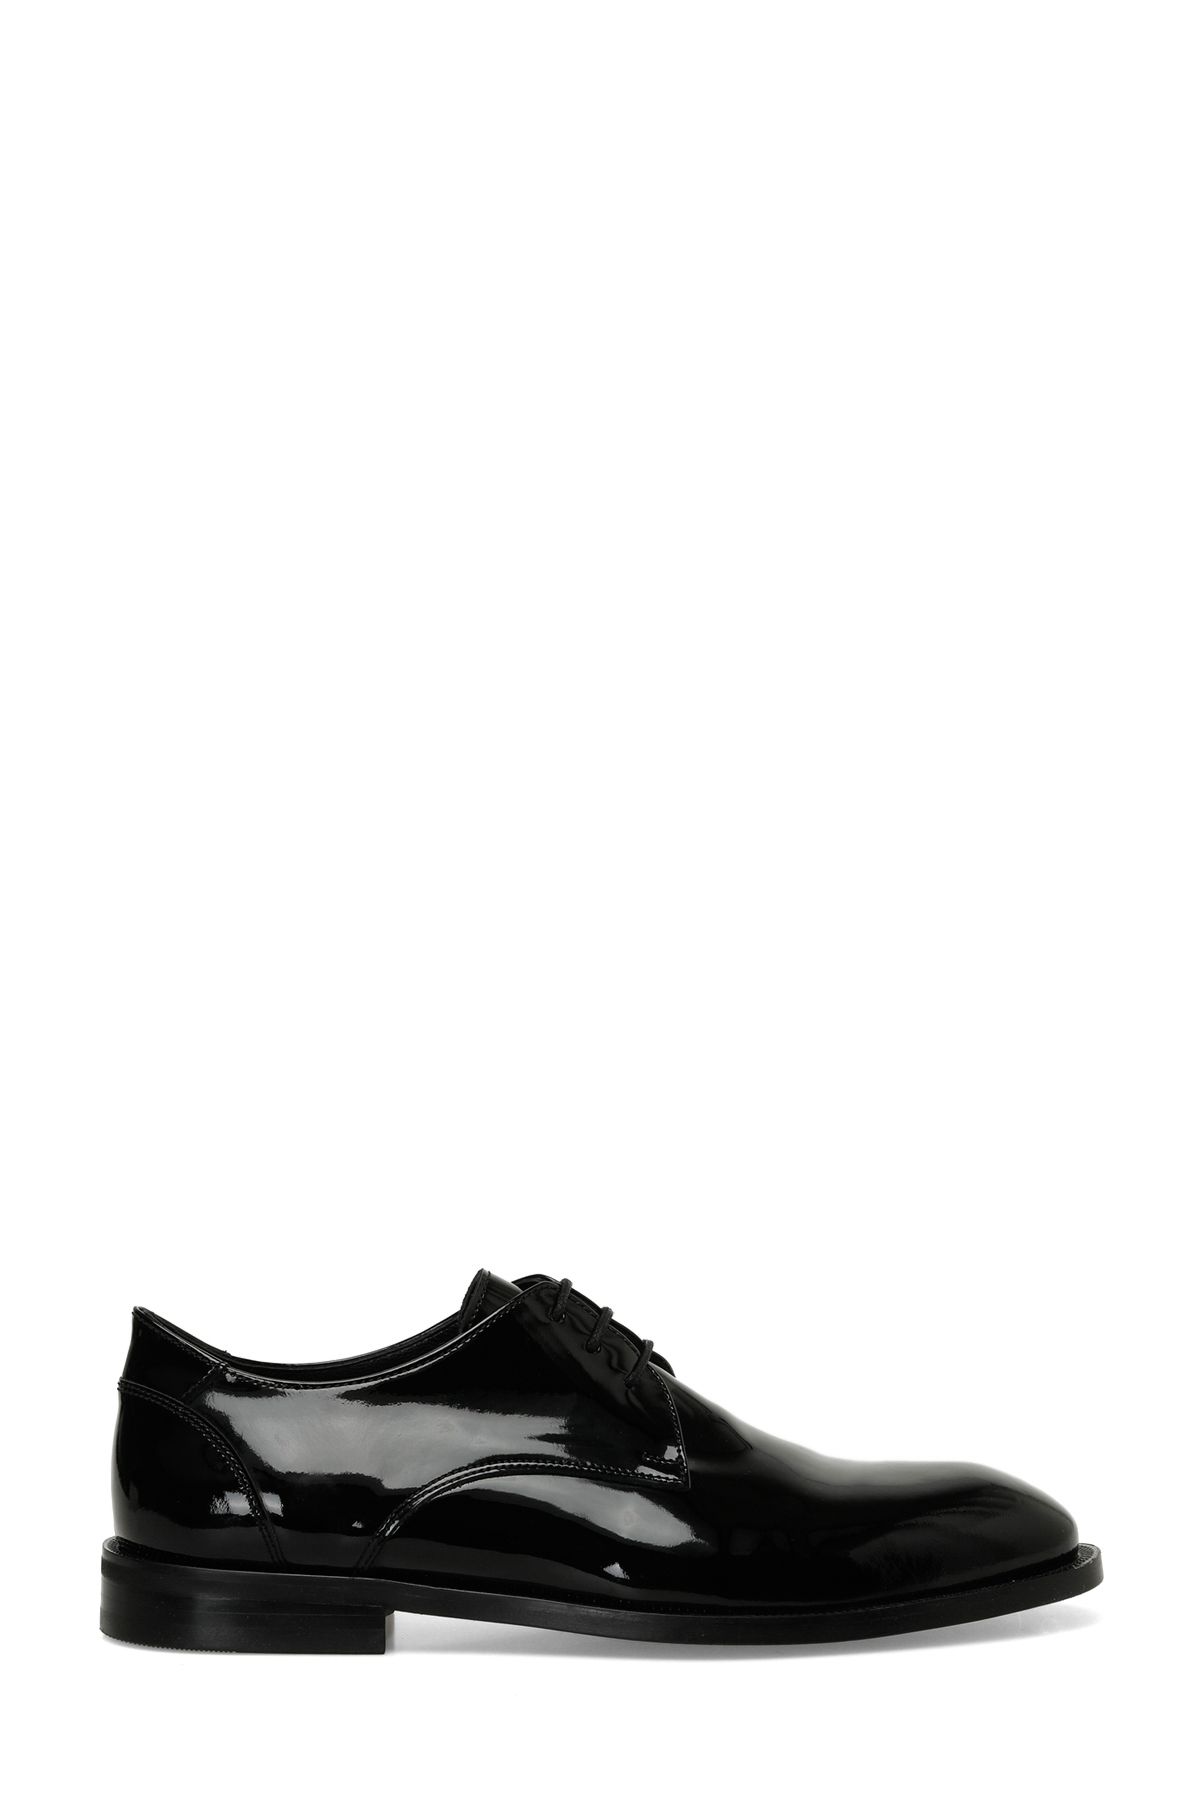 İnci INCI MANTRA R 4FX Siyah Erkek Klasik Ayakkabı